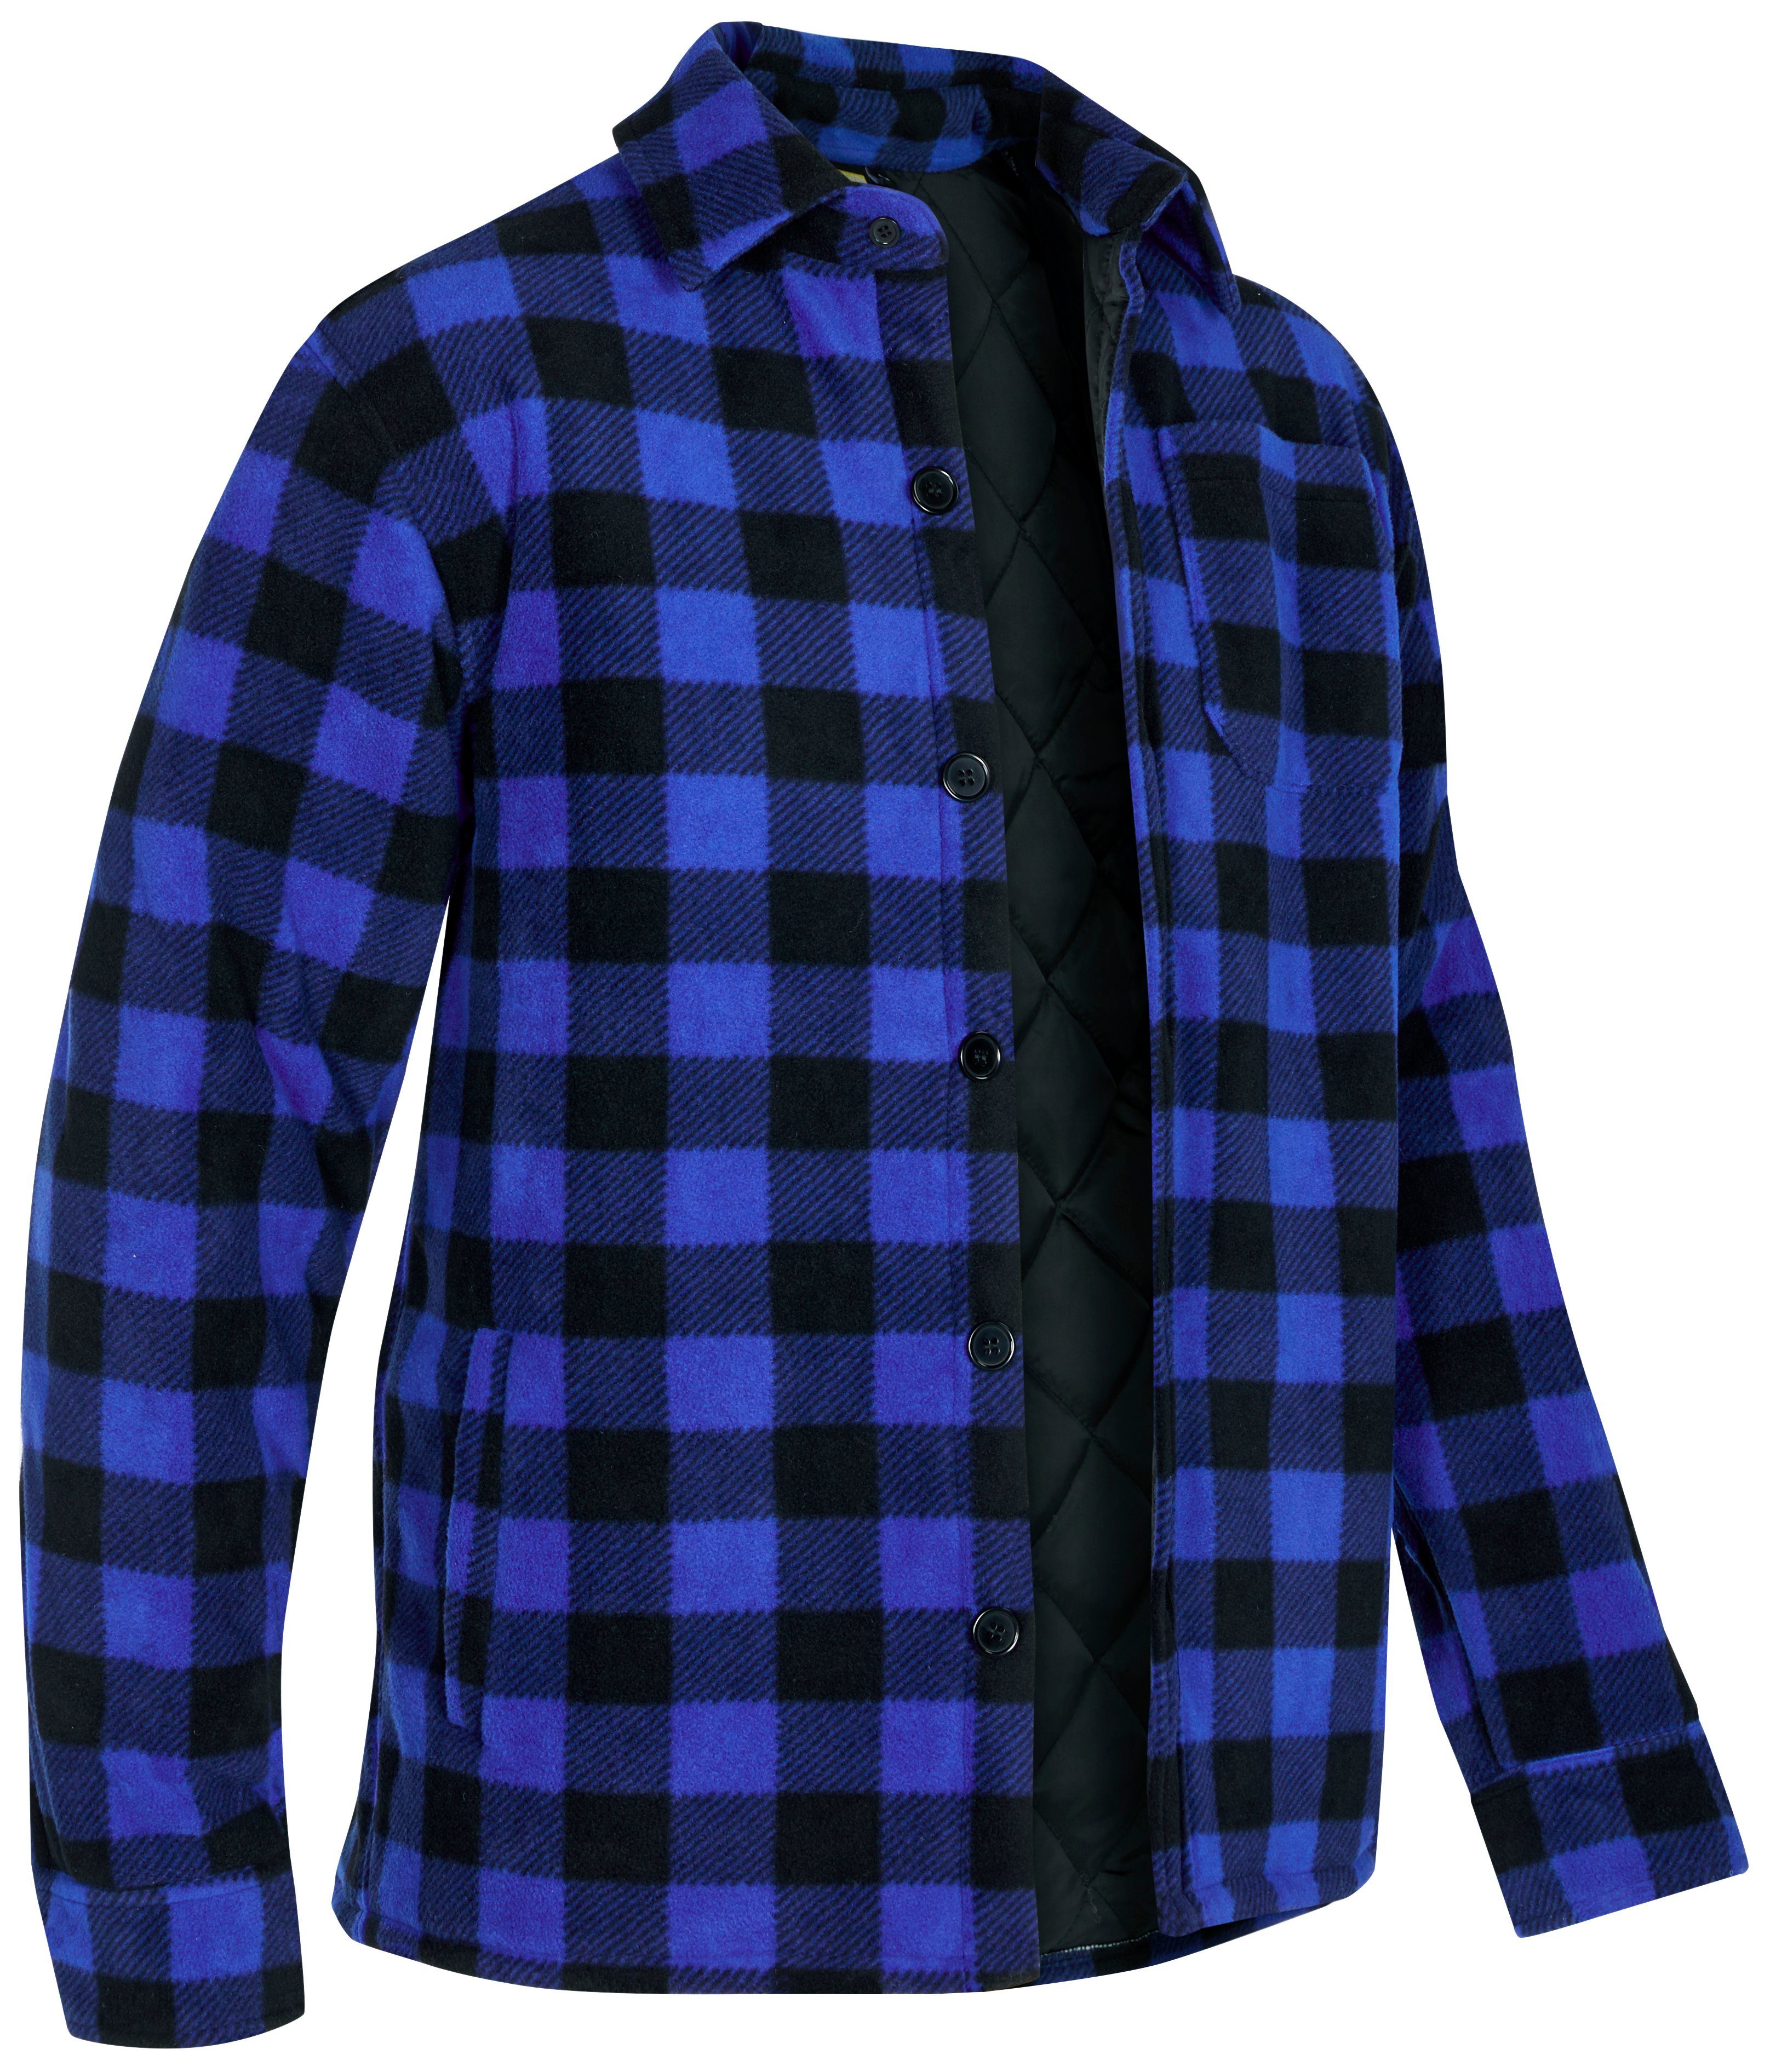 Flanellstoff oder verlängertem mit Hemd zu warm 5 mit Jacke tragen) Northern gefüttert, Country Taschen, Flanellhemd zugeknöpft (als offen blau-schwarz Rücken,